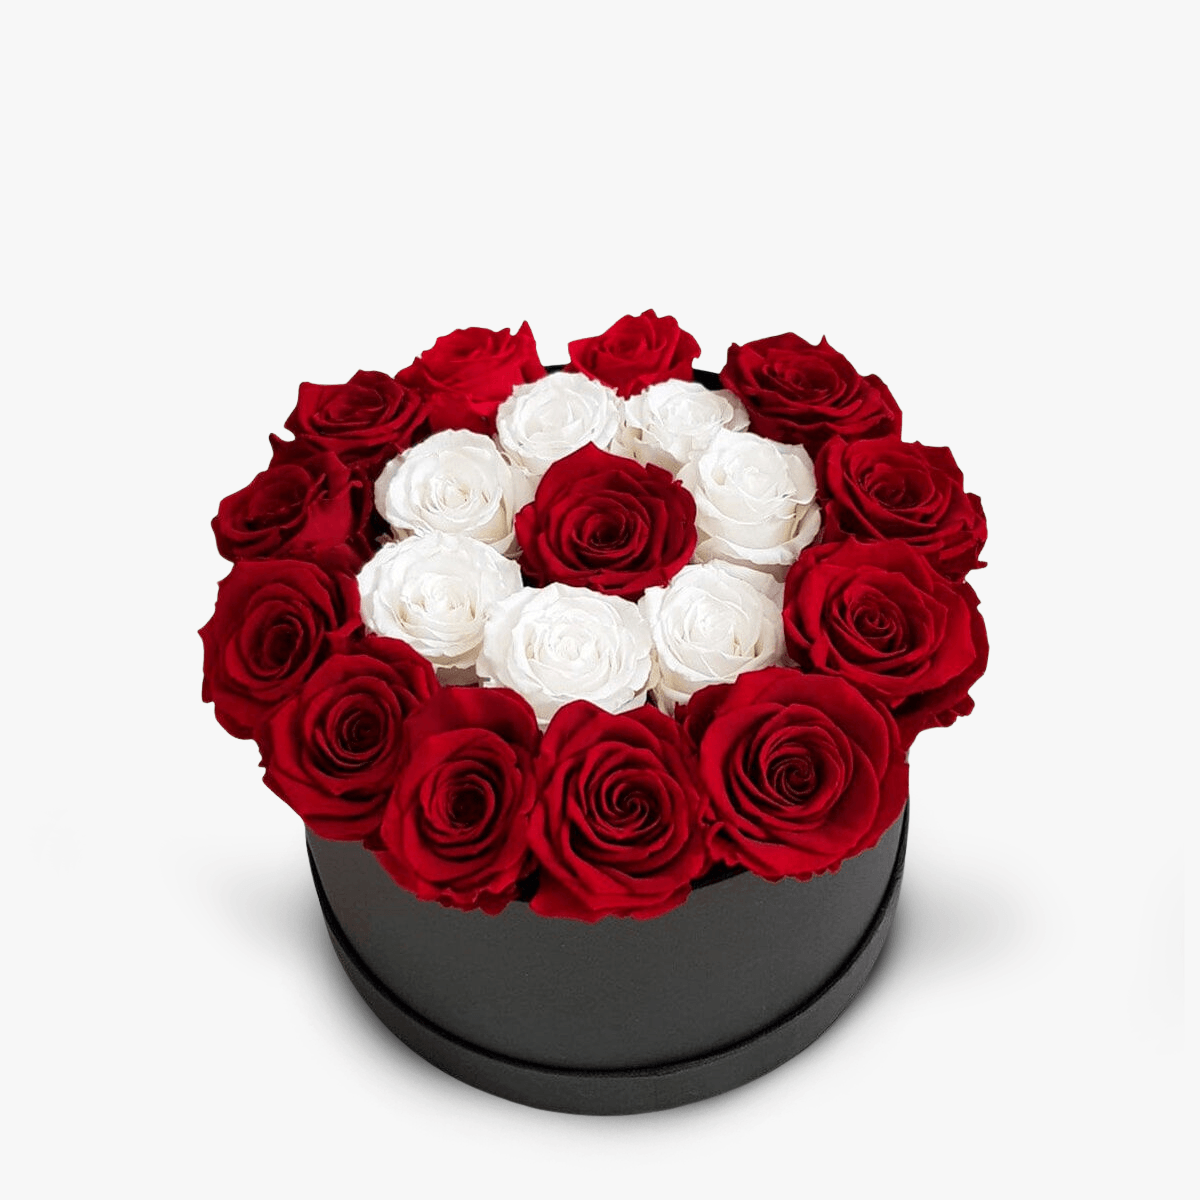 Cutie cu 23 trandafiri rosii si albi criogenati Cutie cu 23 trandafiri rosii si albi criogentai – Standard albi